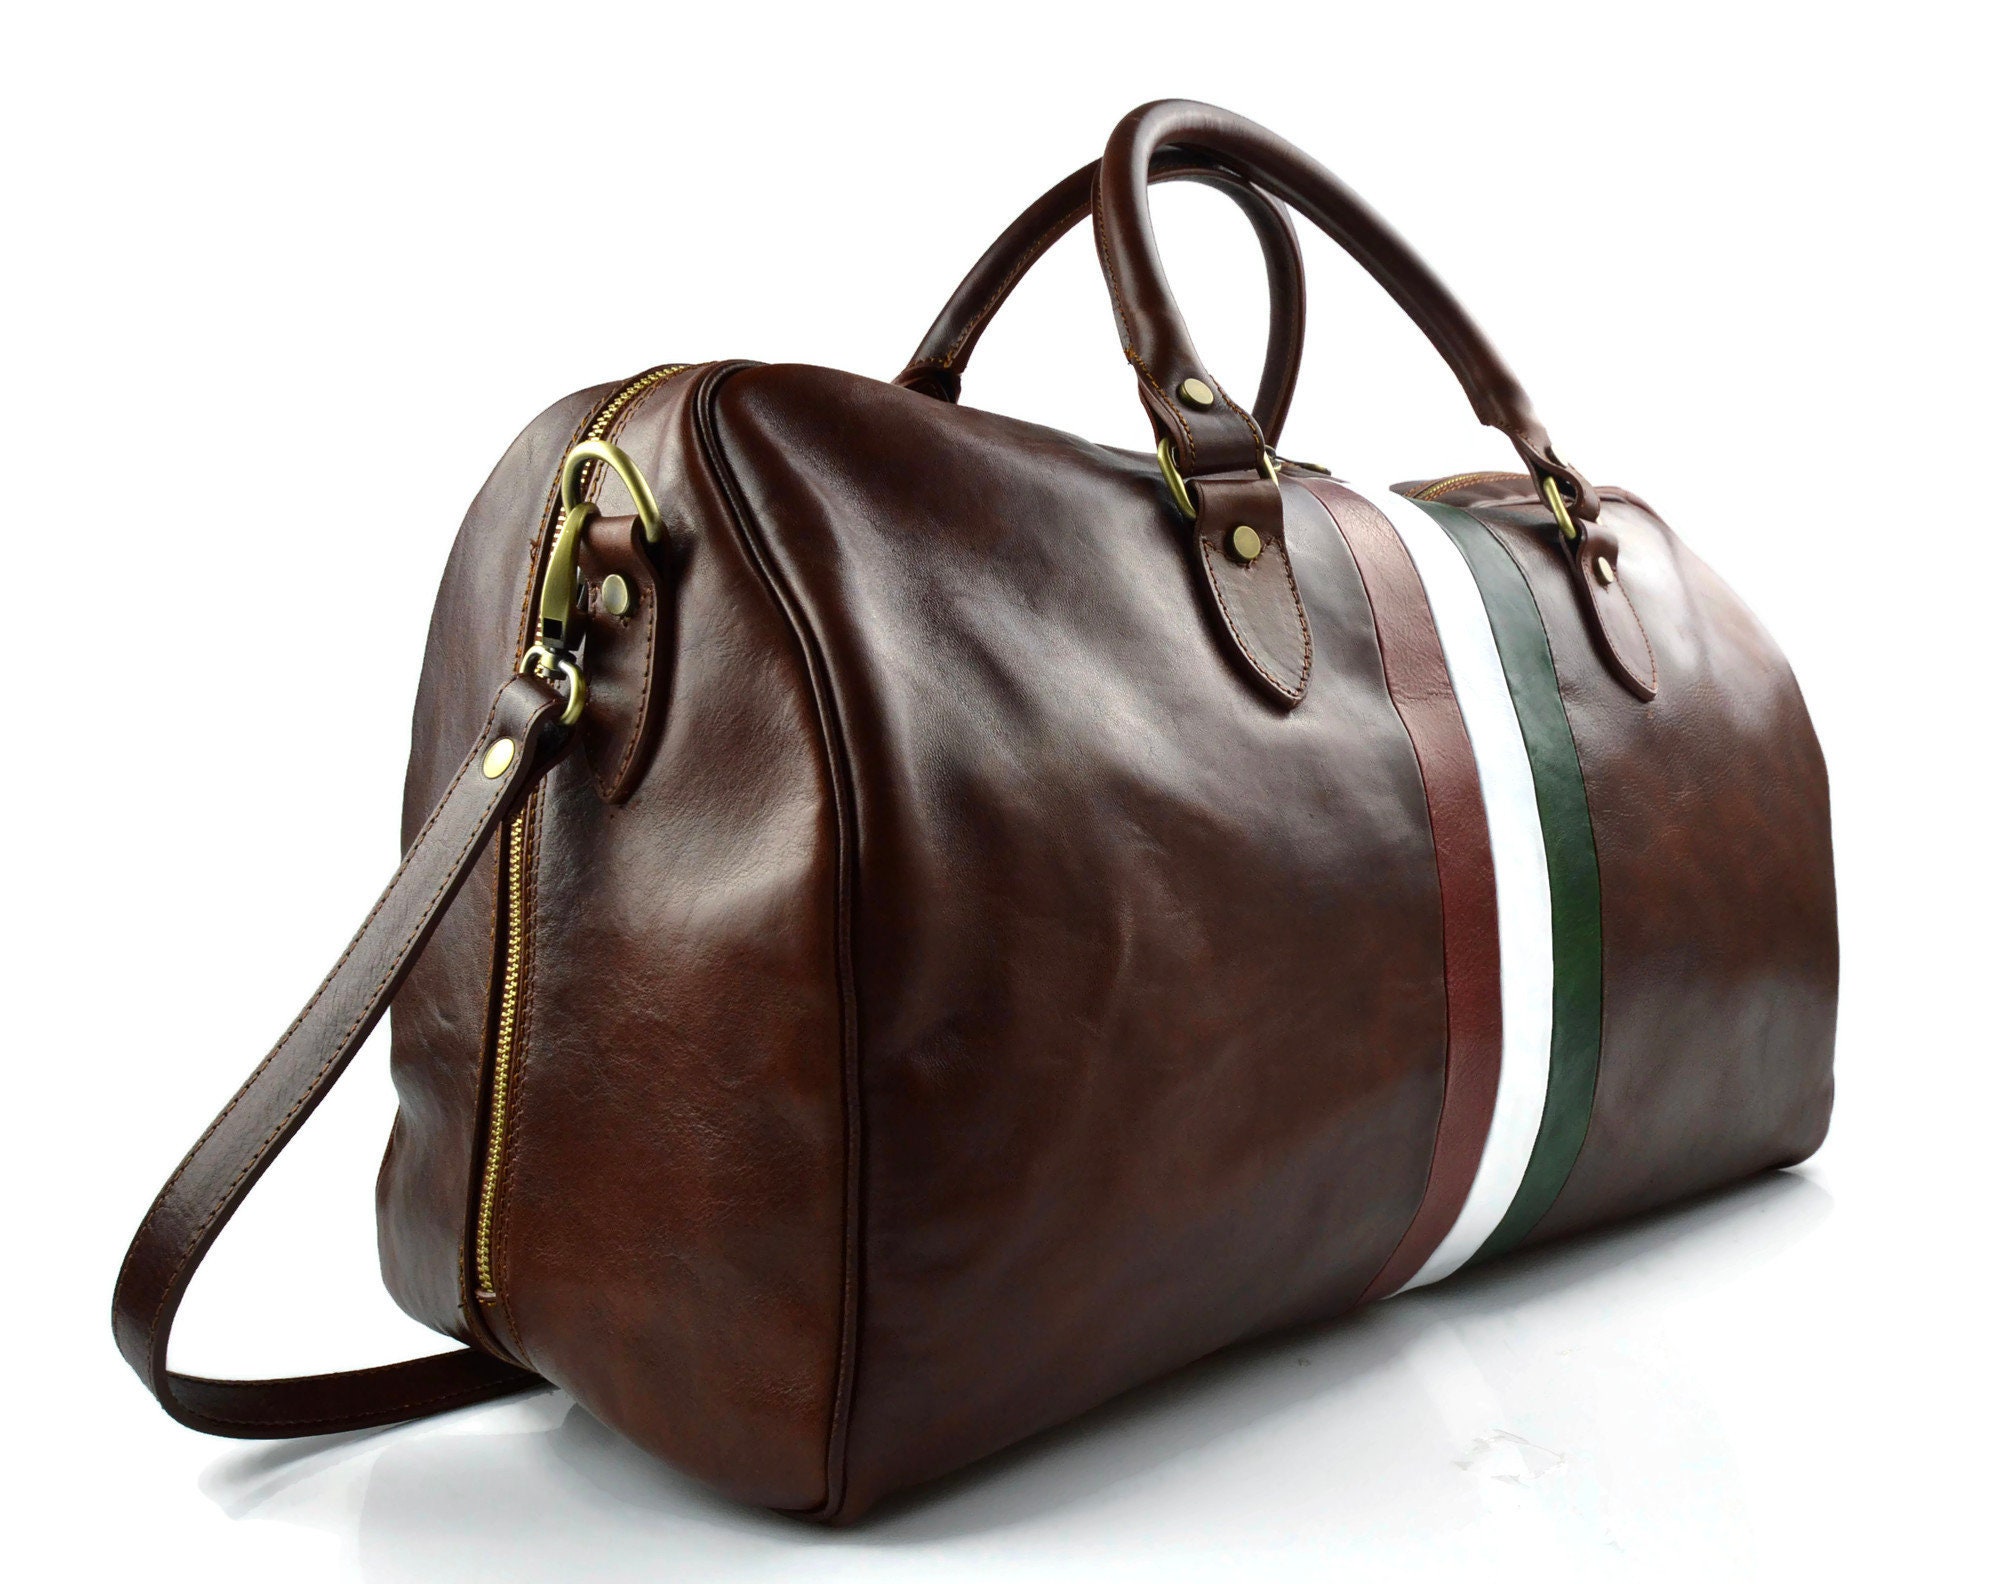 Leather travel bag duffle bag leather shoulder bag brown men | Etsy